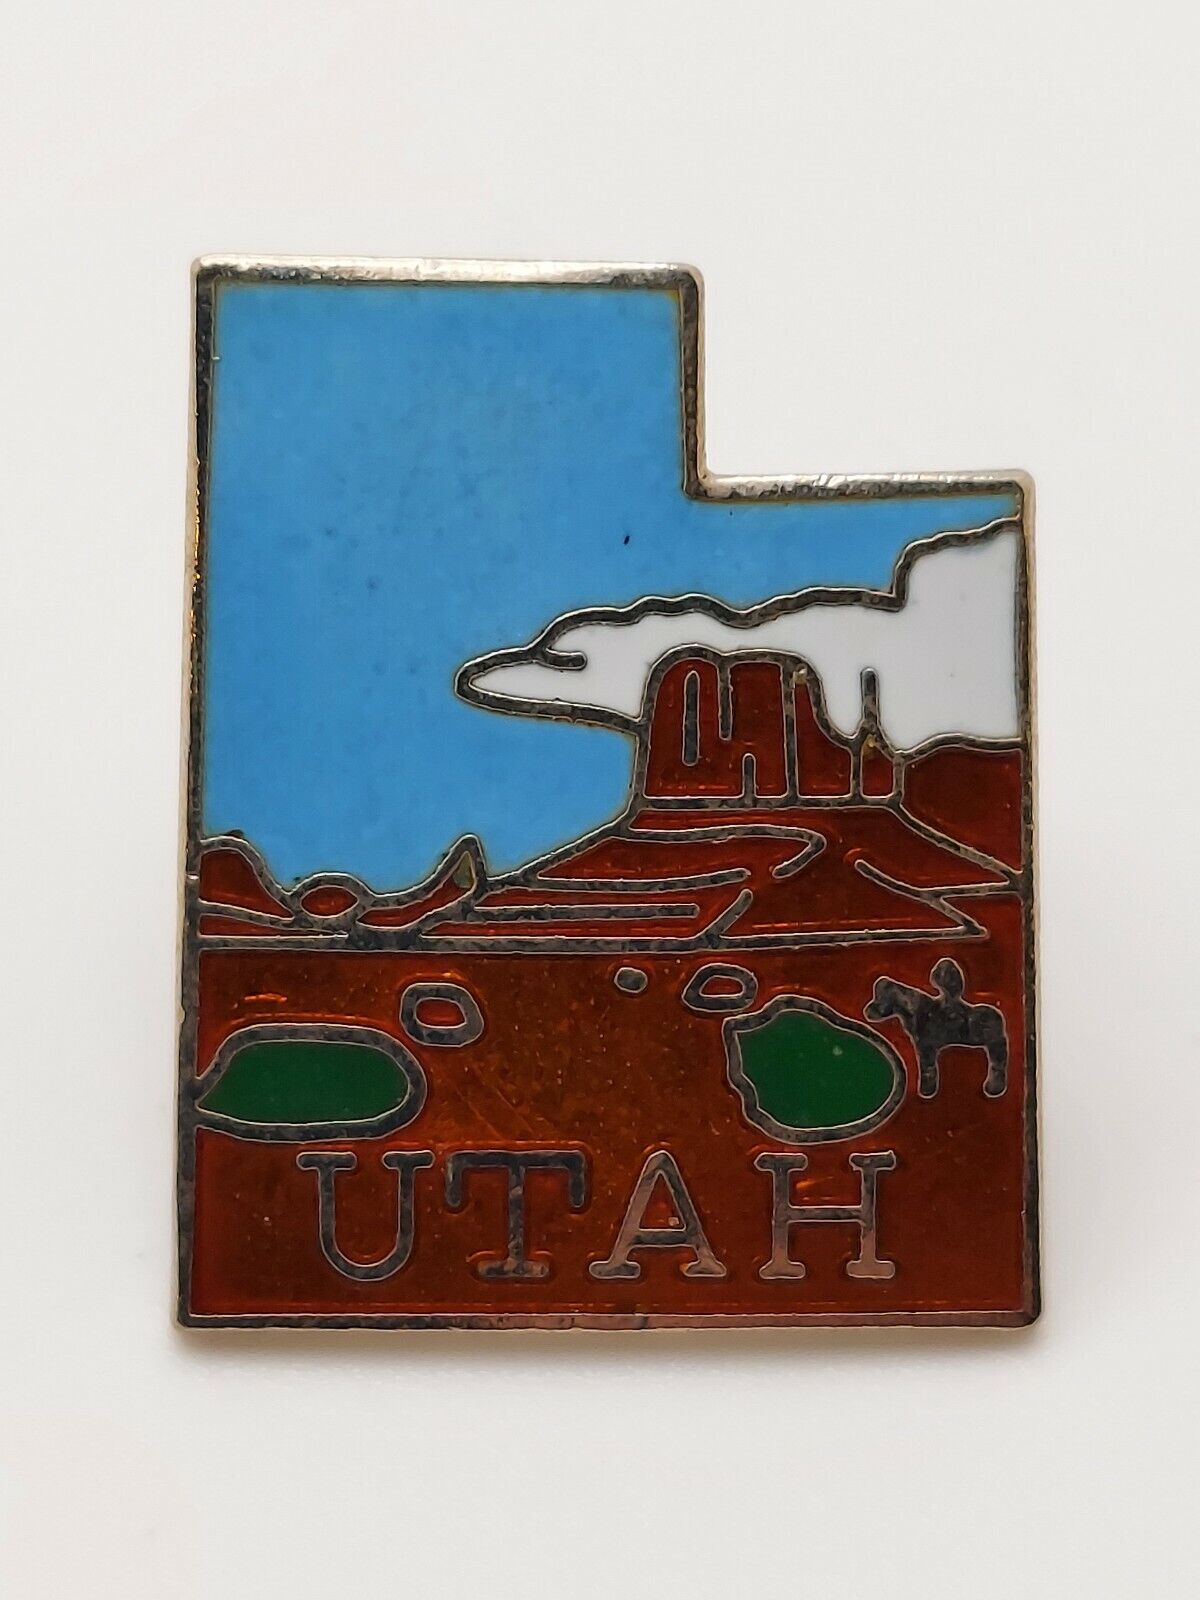 Utah State Pin Vintage Enamel Pin Landscape Mountains Sky Pinchback 